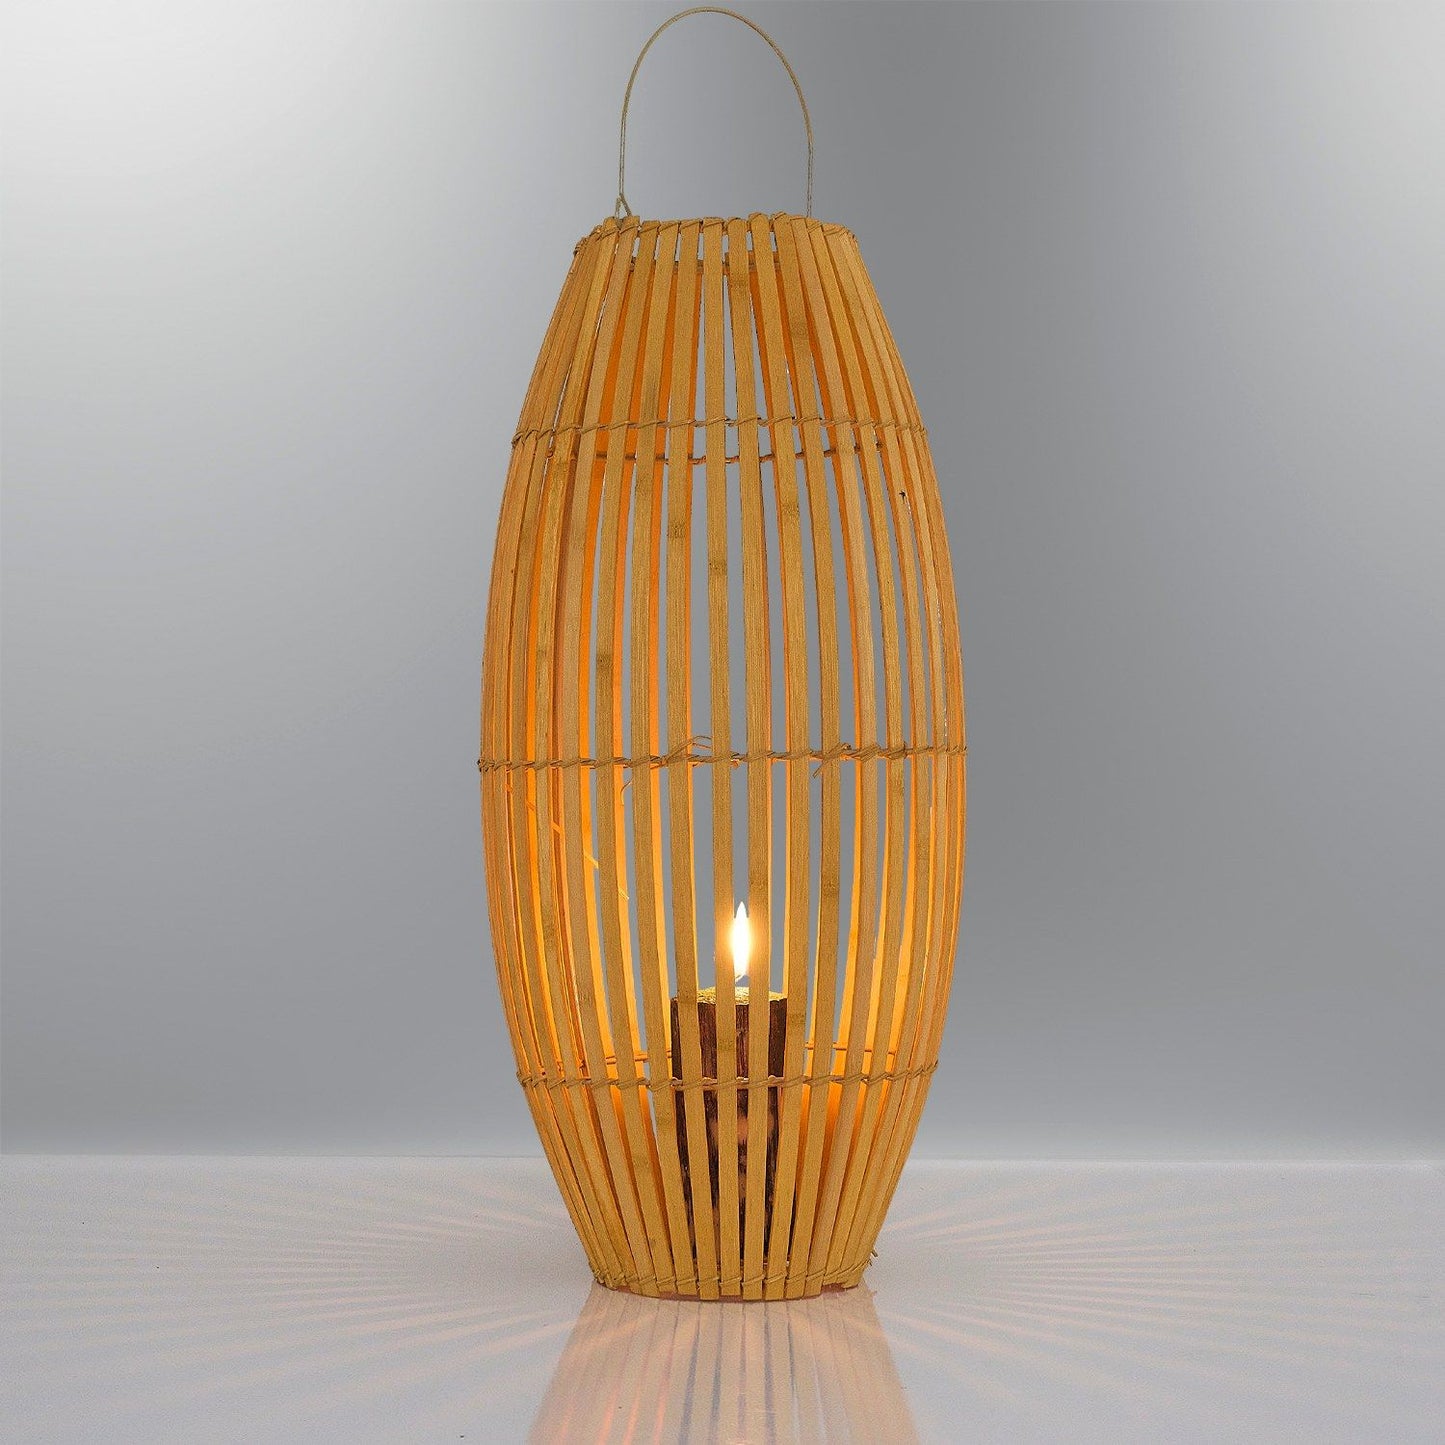 Cova bambus lanterne